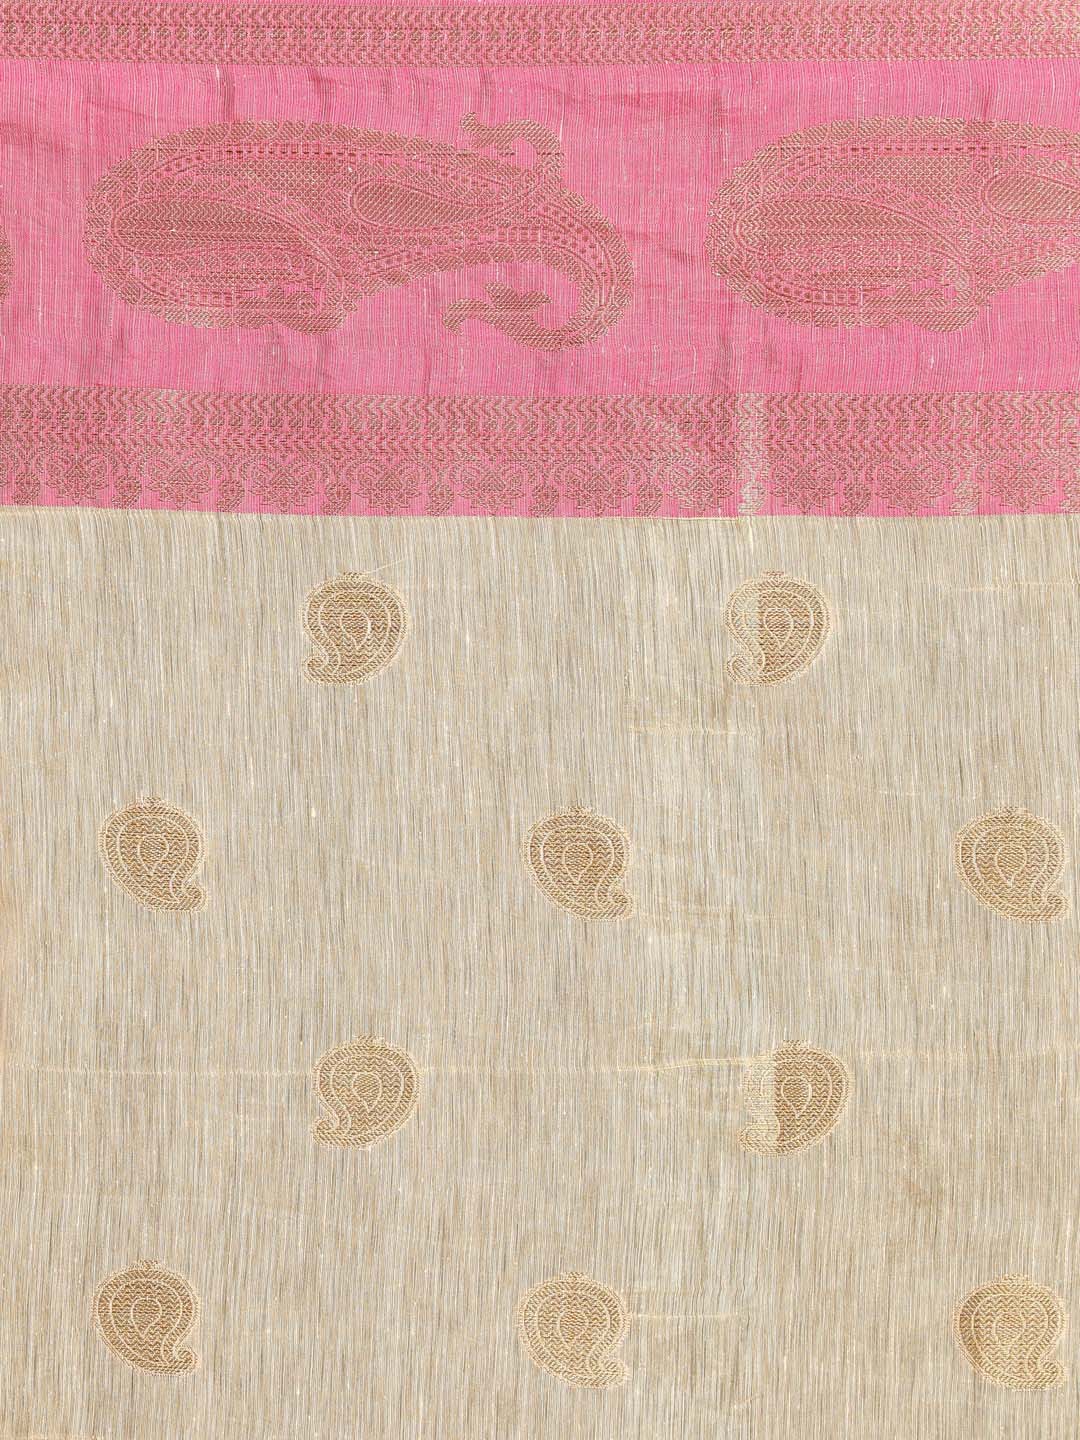 Indethnic Banarasi Beige Woven Design Work Wear Saree - Saree Detail View